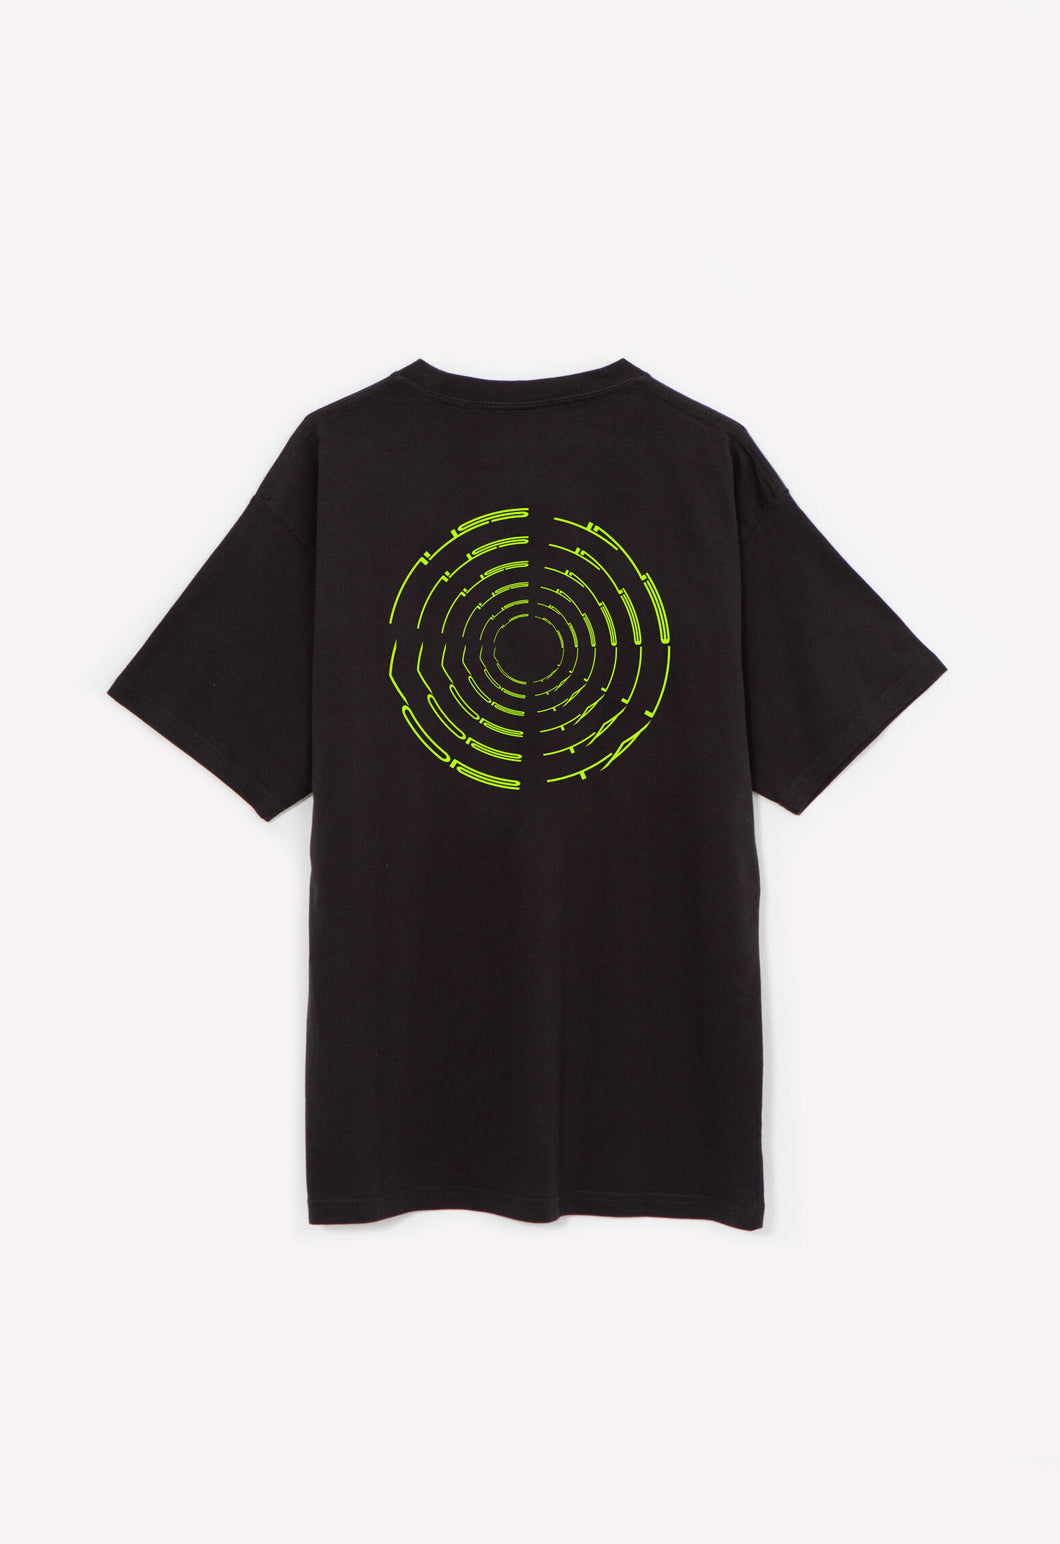 Stil vor Talent Spiral Logo Shirt Limited Edition 1/50